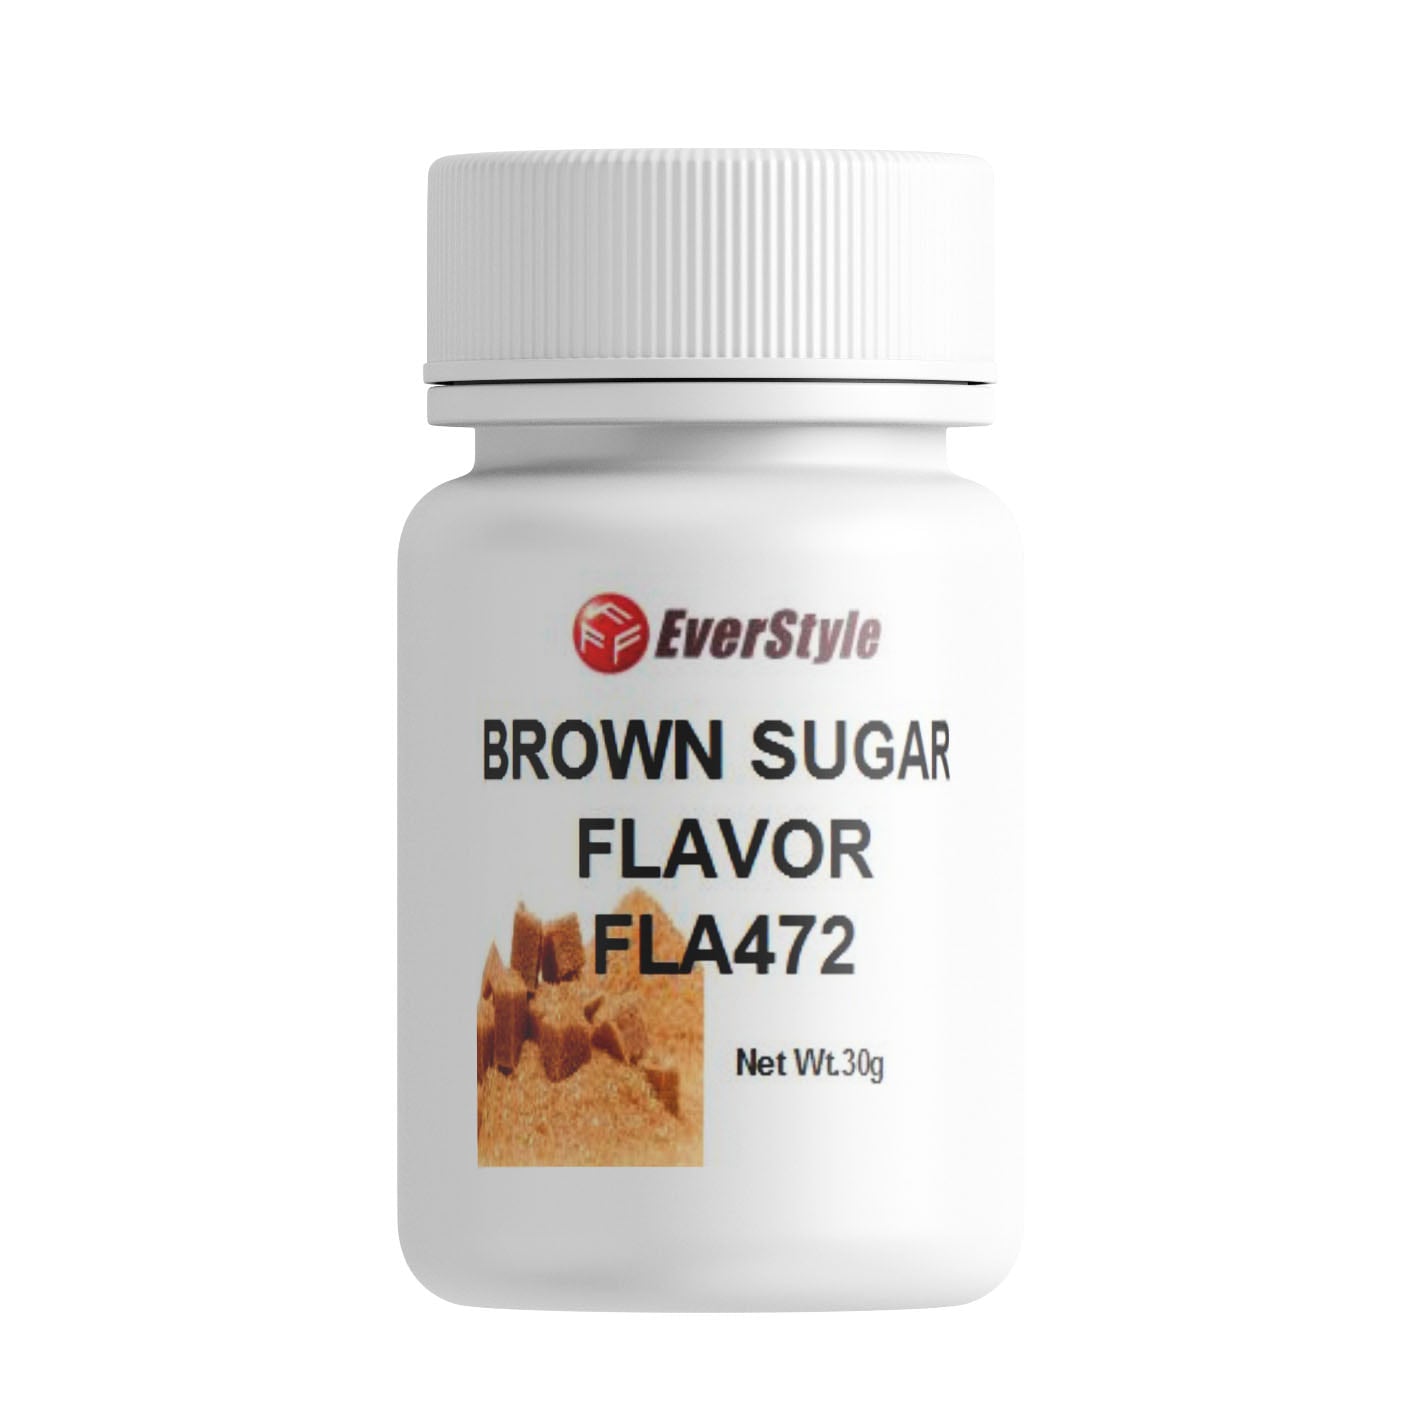 Everstyle Brown Sugar Flavor 30g (FLA472)